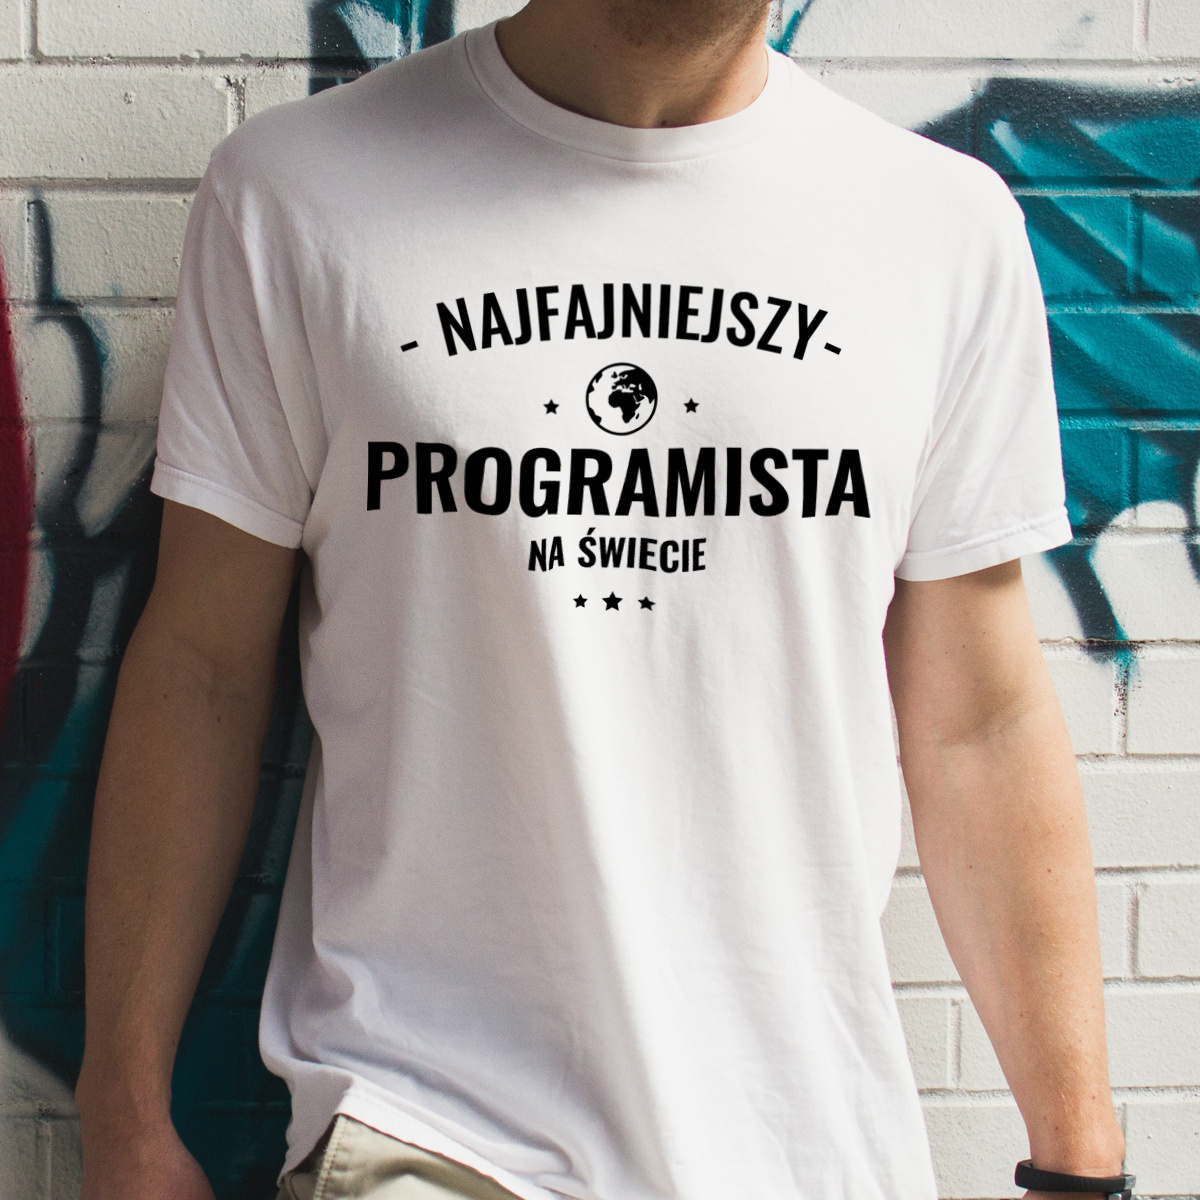 Najfajniejszy Programista Na Świecie - Męska Koszulka Biała